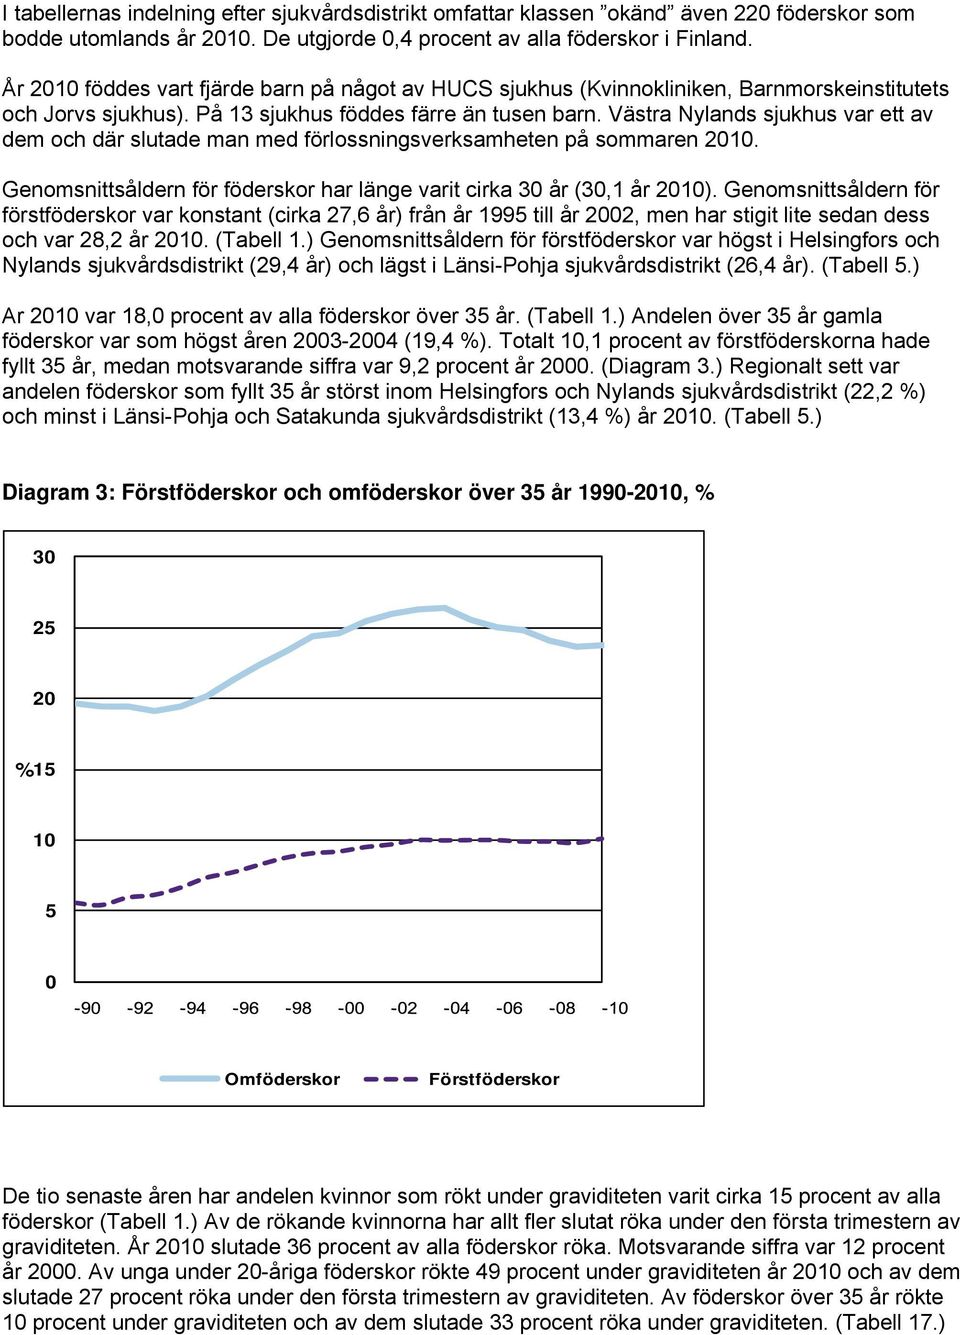 Västra Nylands sjukhus var ett av dem och där slutade man med förlossningsverksamheten på sommaren 2010. Genomsnittsåldern för föderskor har länge varit cirka 30 år (30,1 år 2010).